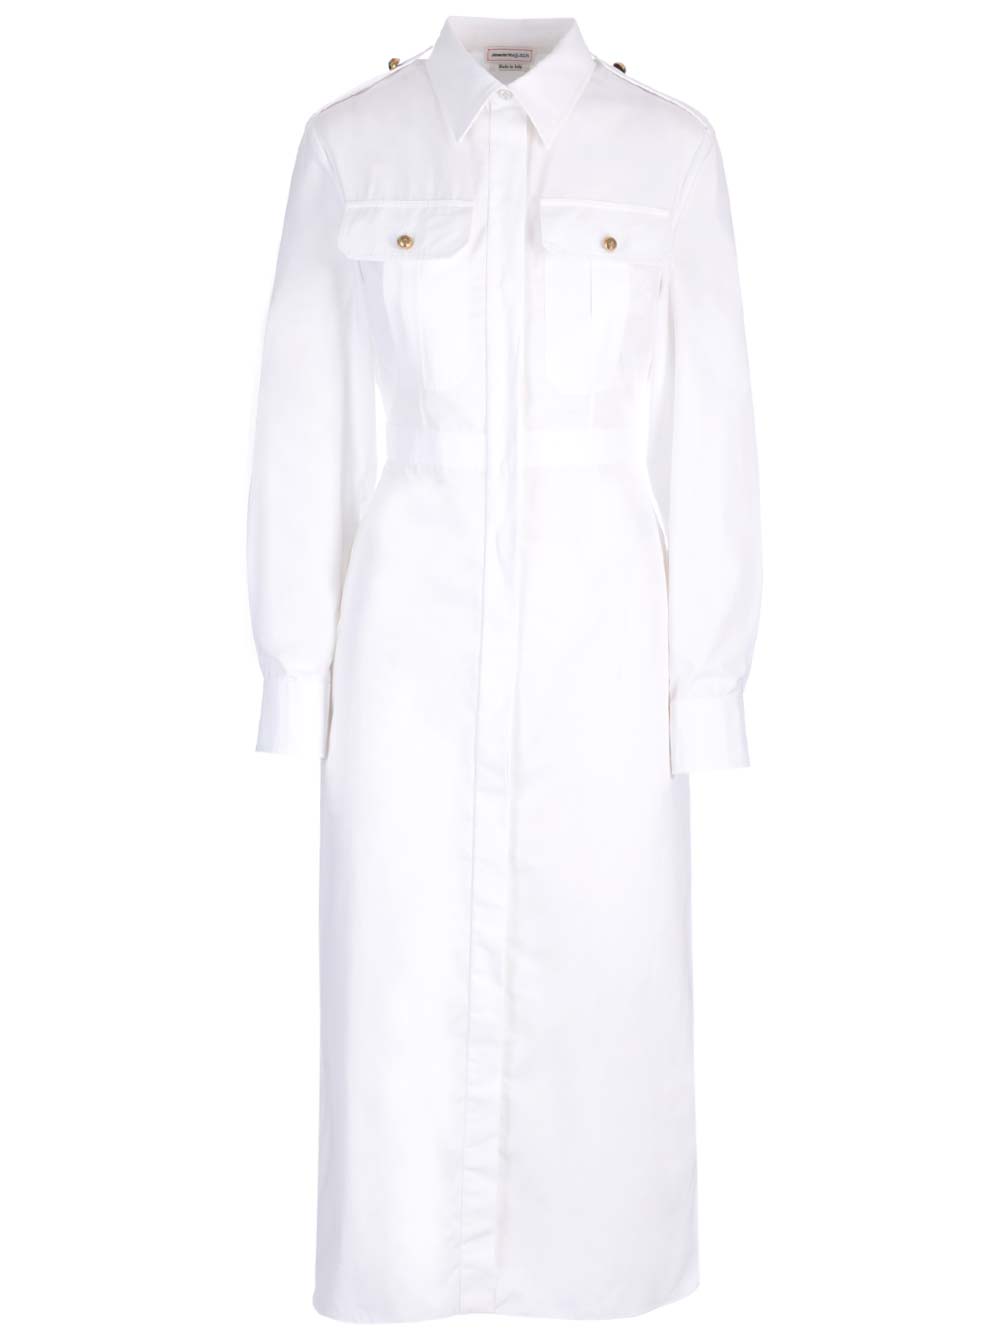 ALEXANDER MCQUEEN WHITE SHIRT DRESS